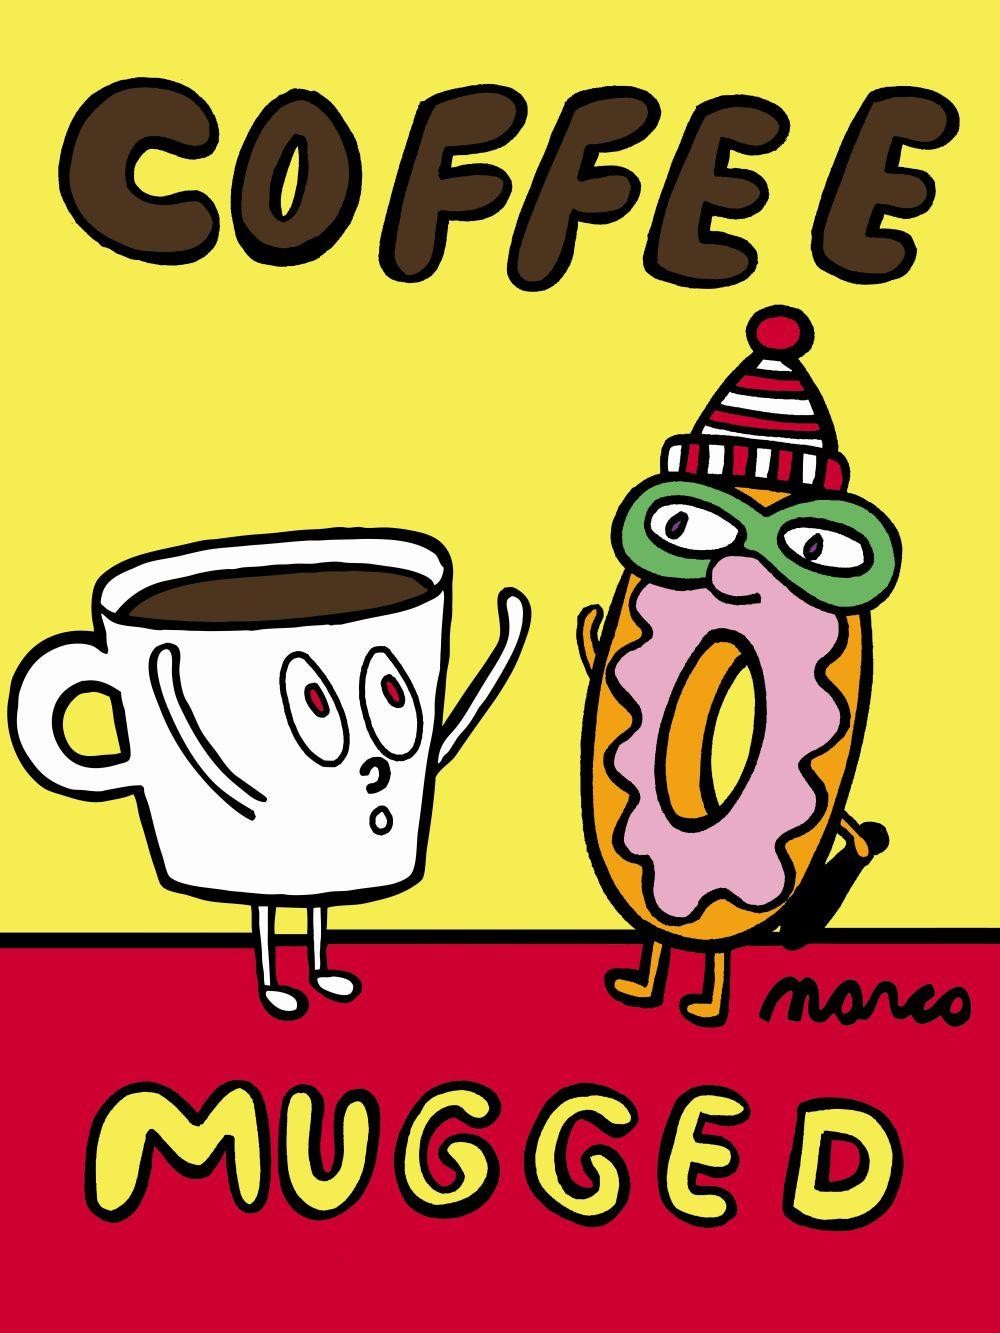 COFFEE MUGGED